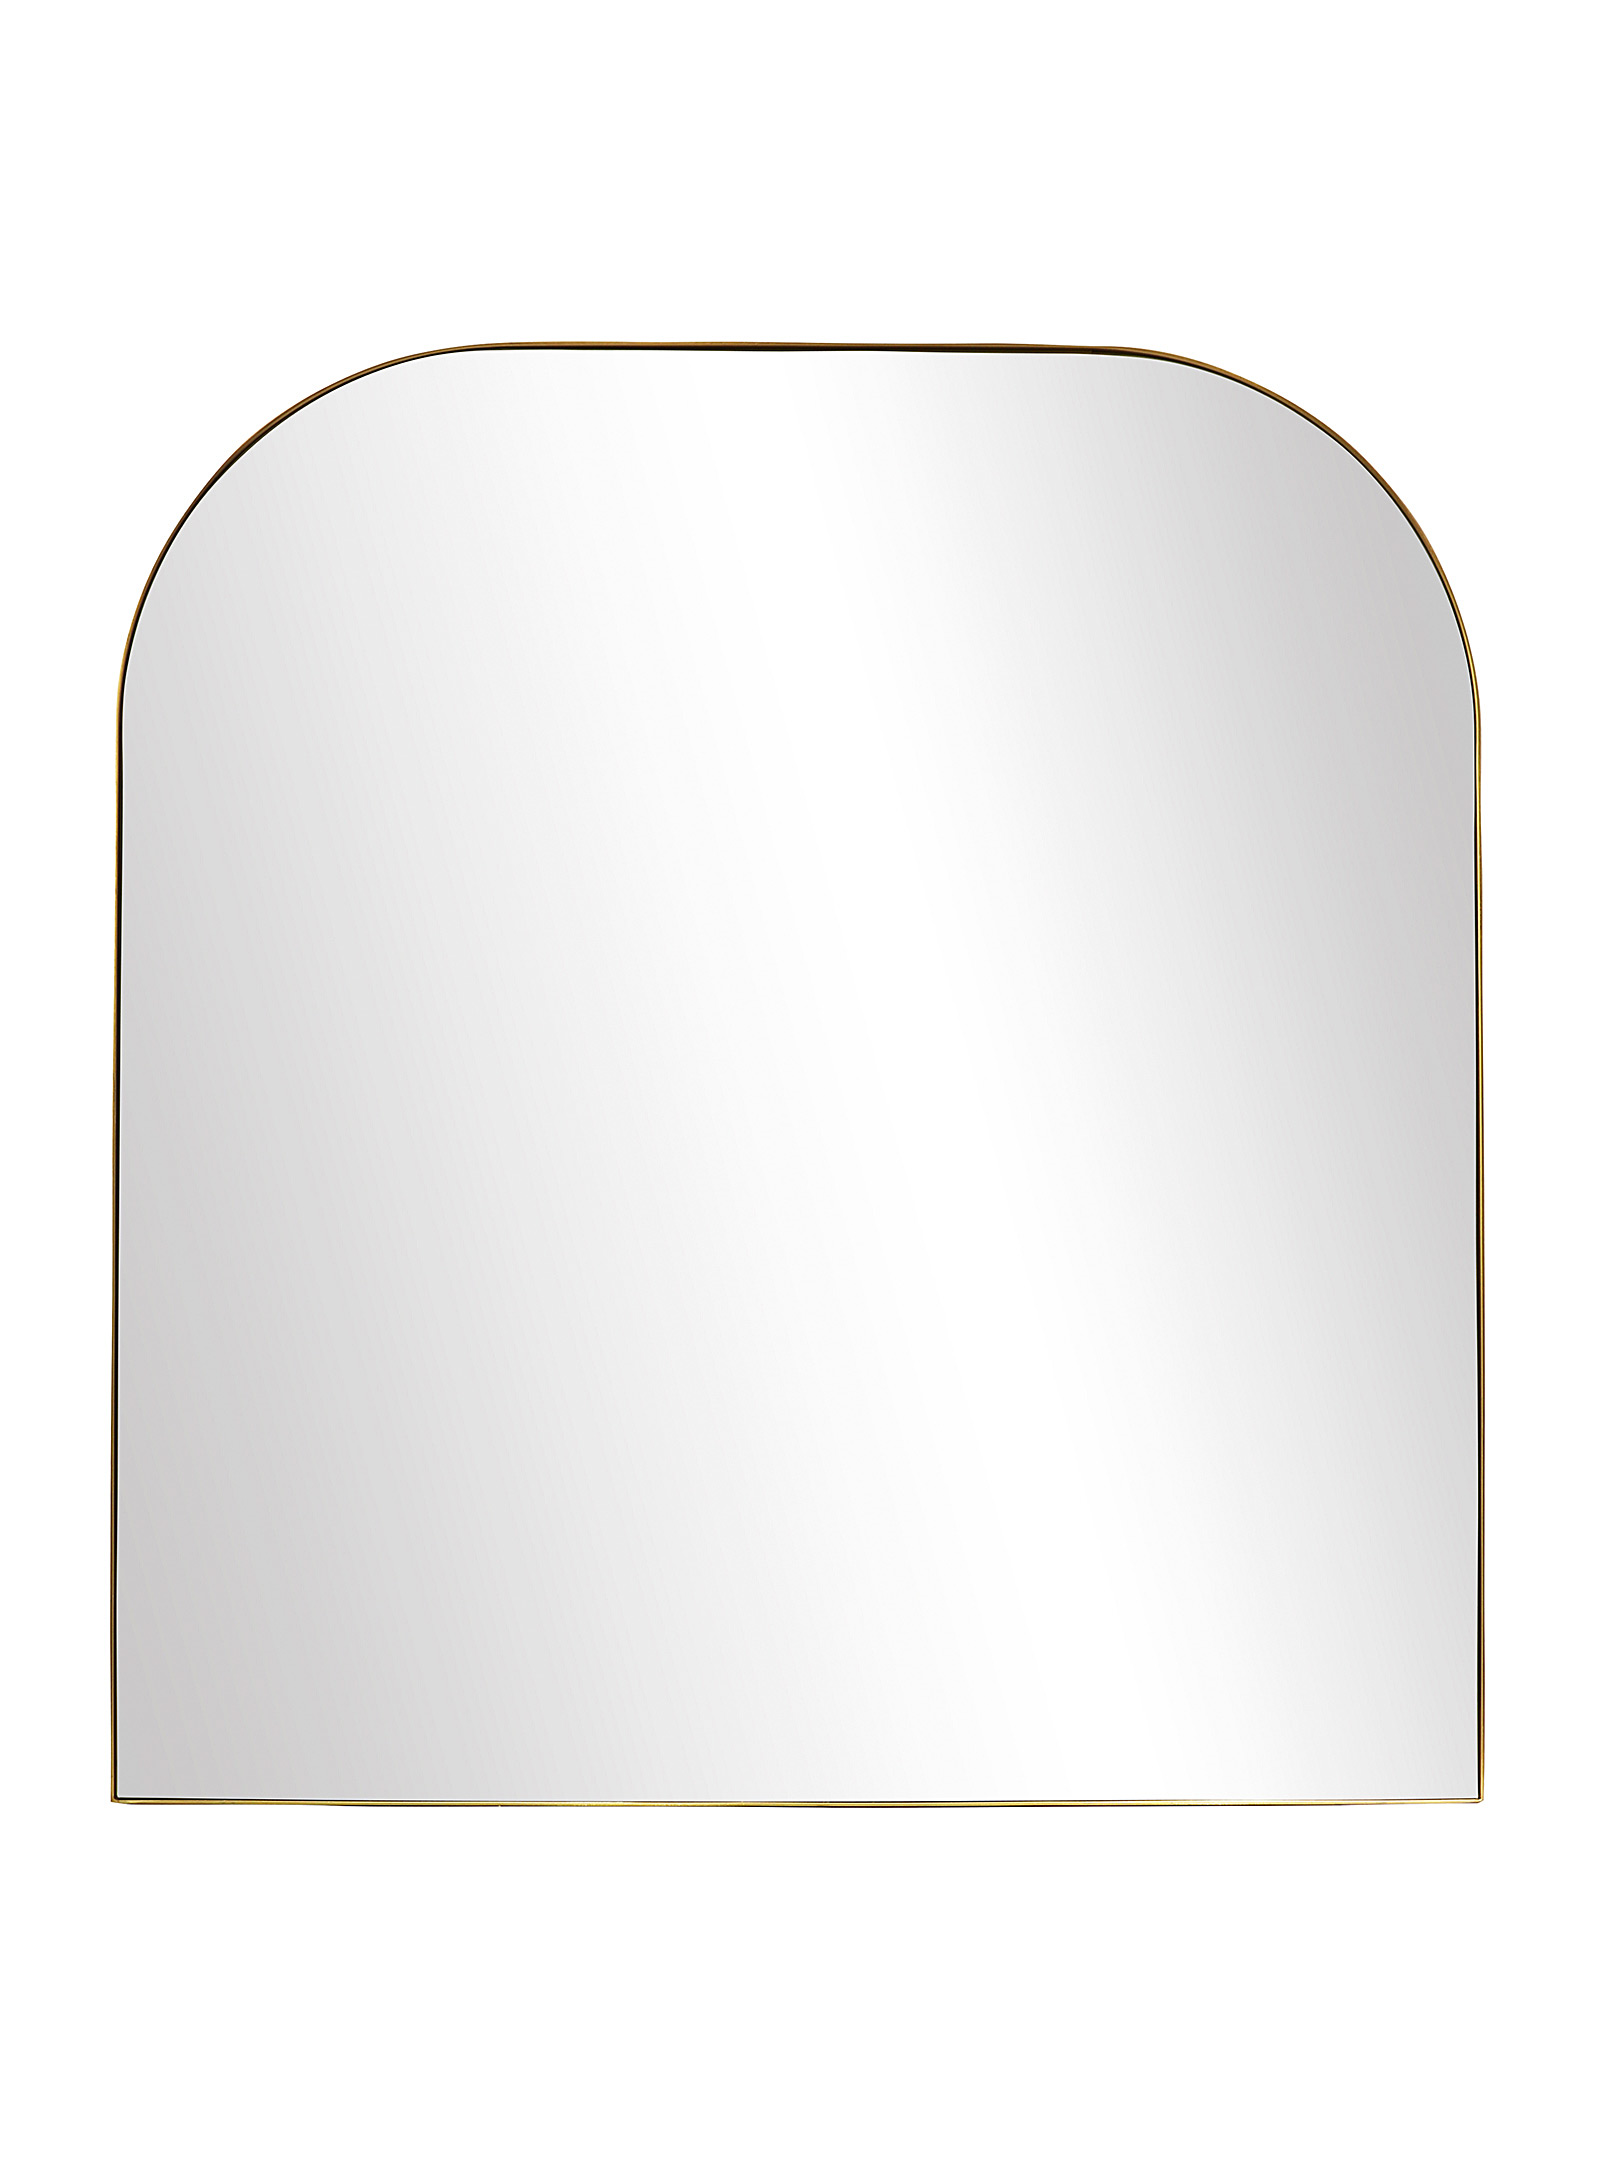 Simons Maison - Le miroir arche carrée dorée